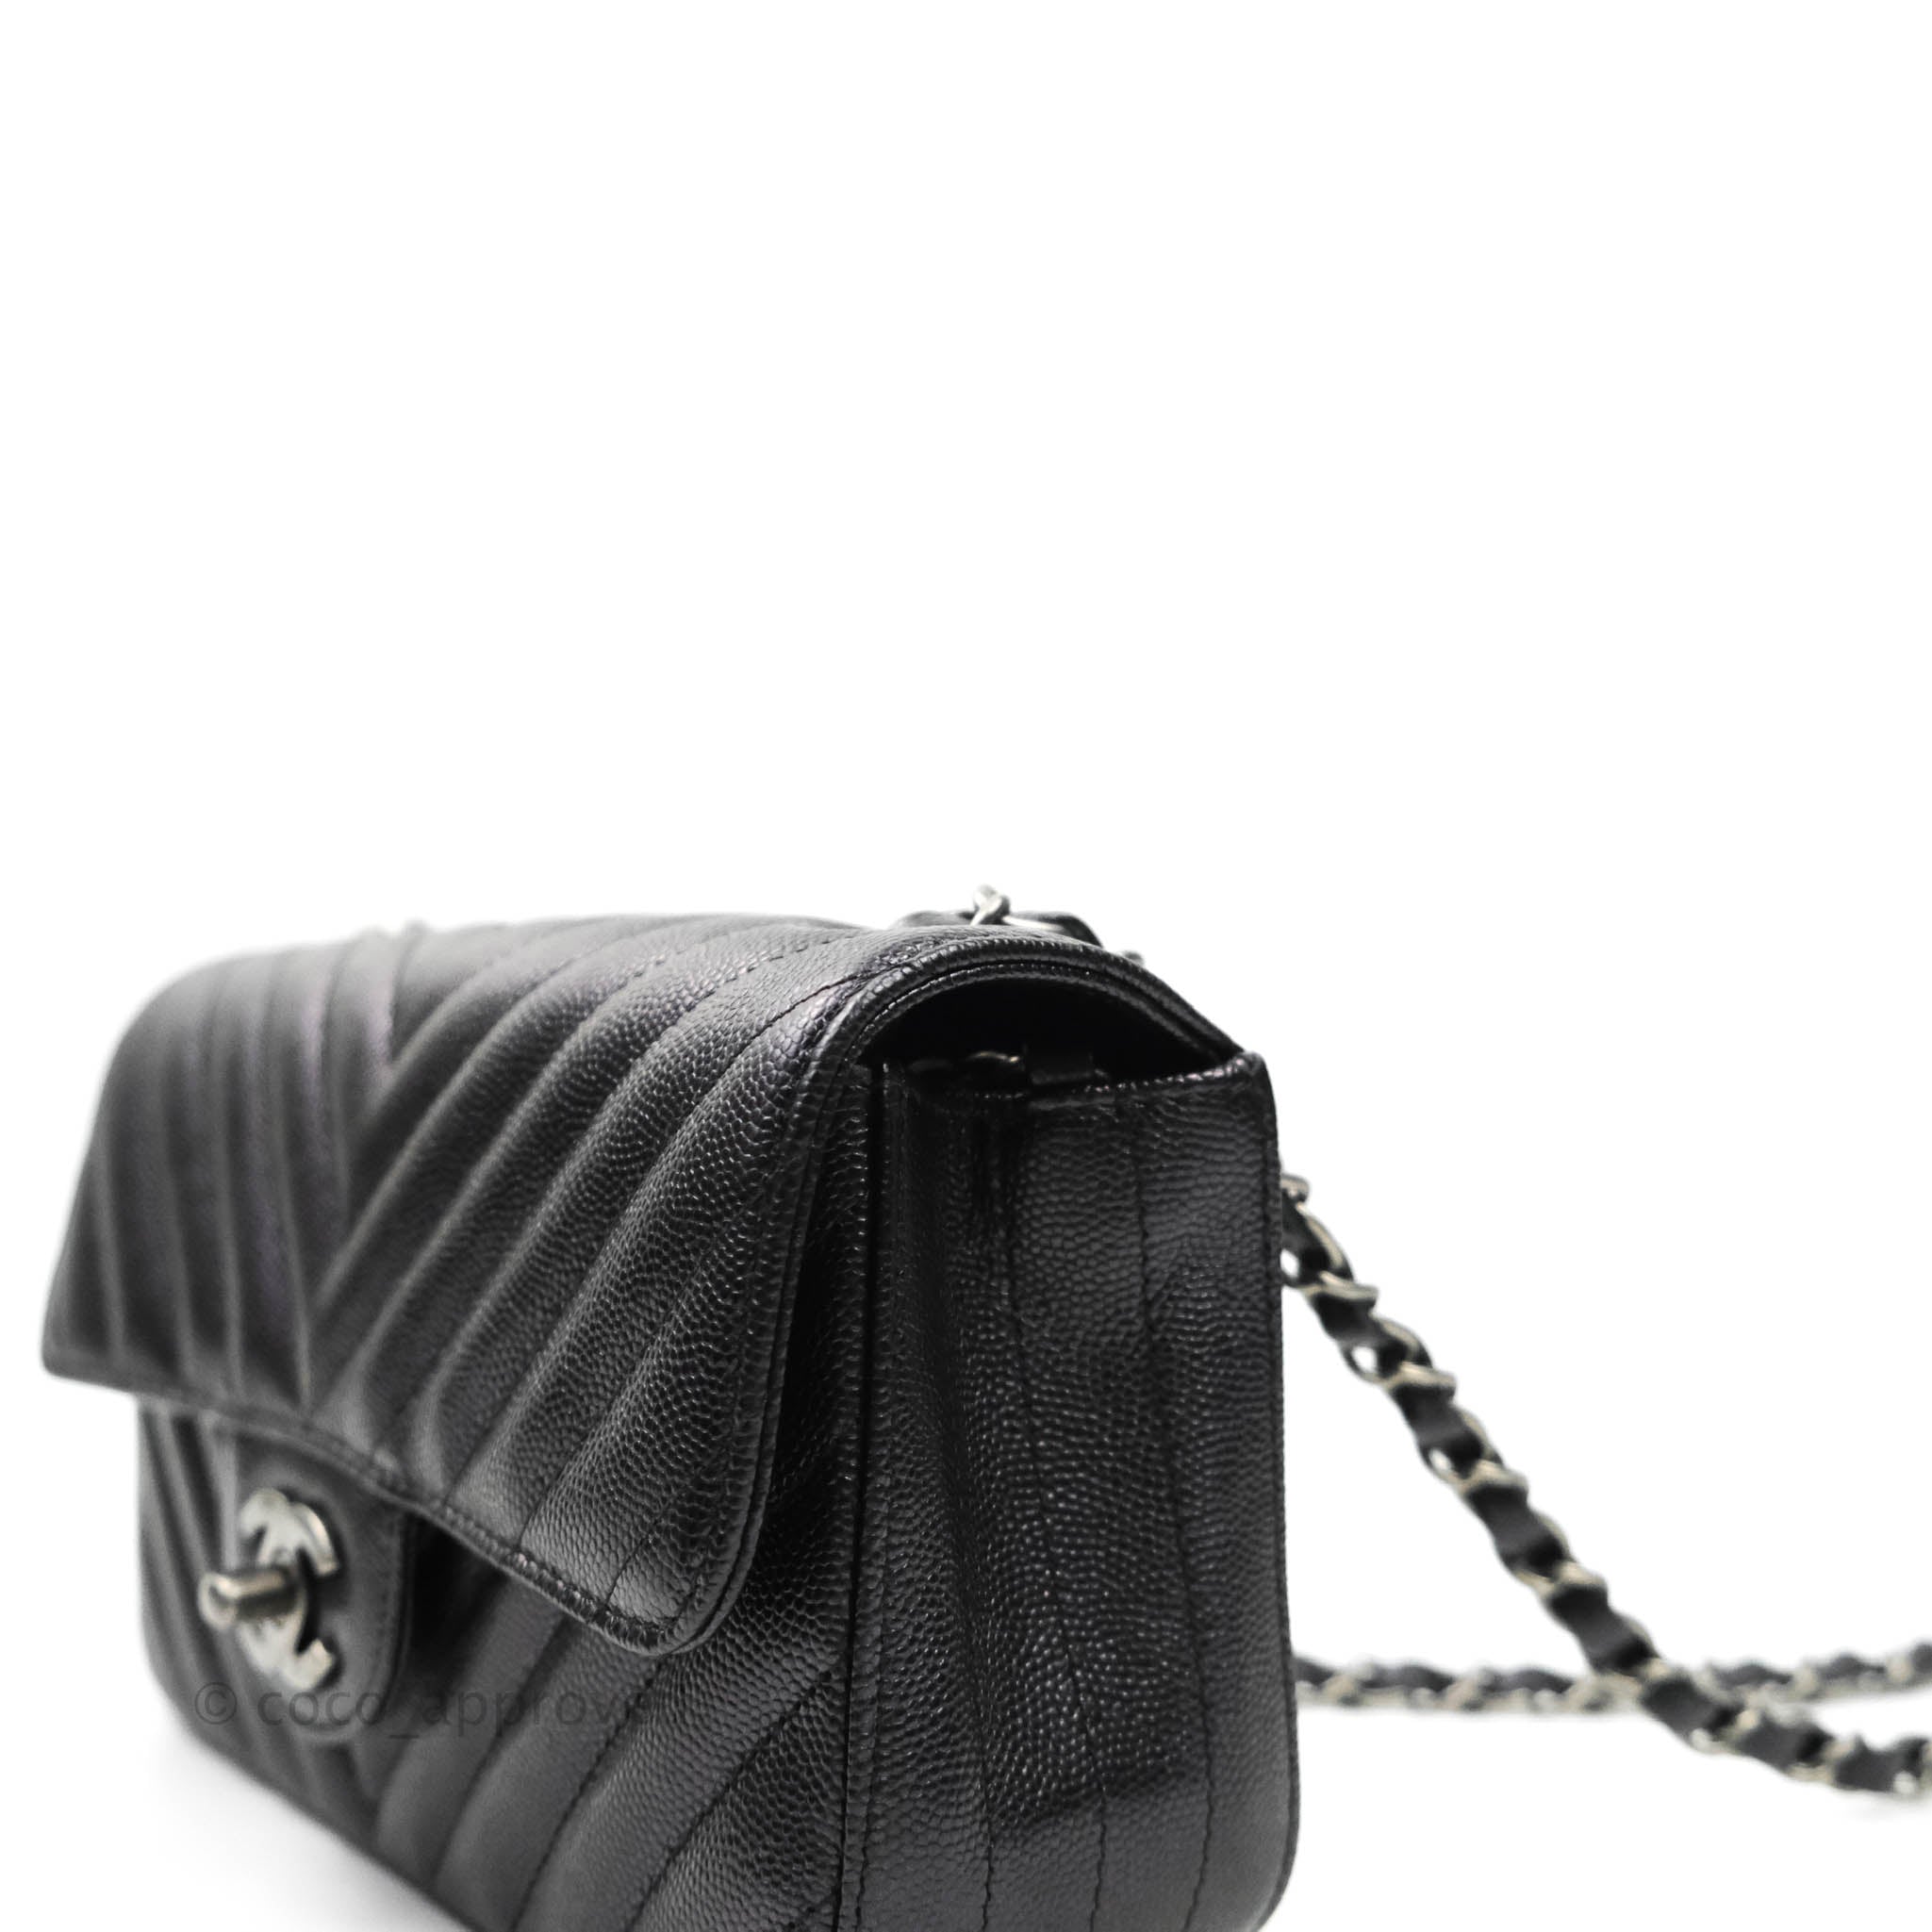 Mua Túi Đeo Chéo Nữ Chanel Black Caviar Small Hobo Bag Màu Đen  Chanel   Mua tại Vua Hàng Hiệu h091406